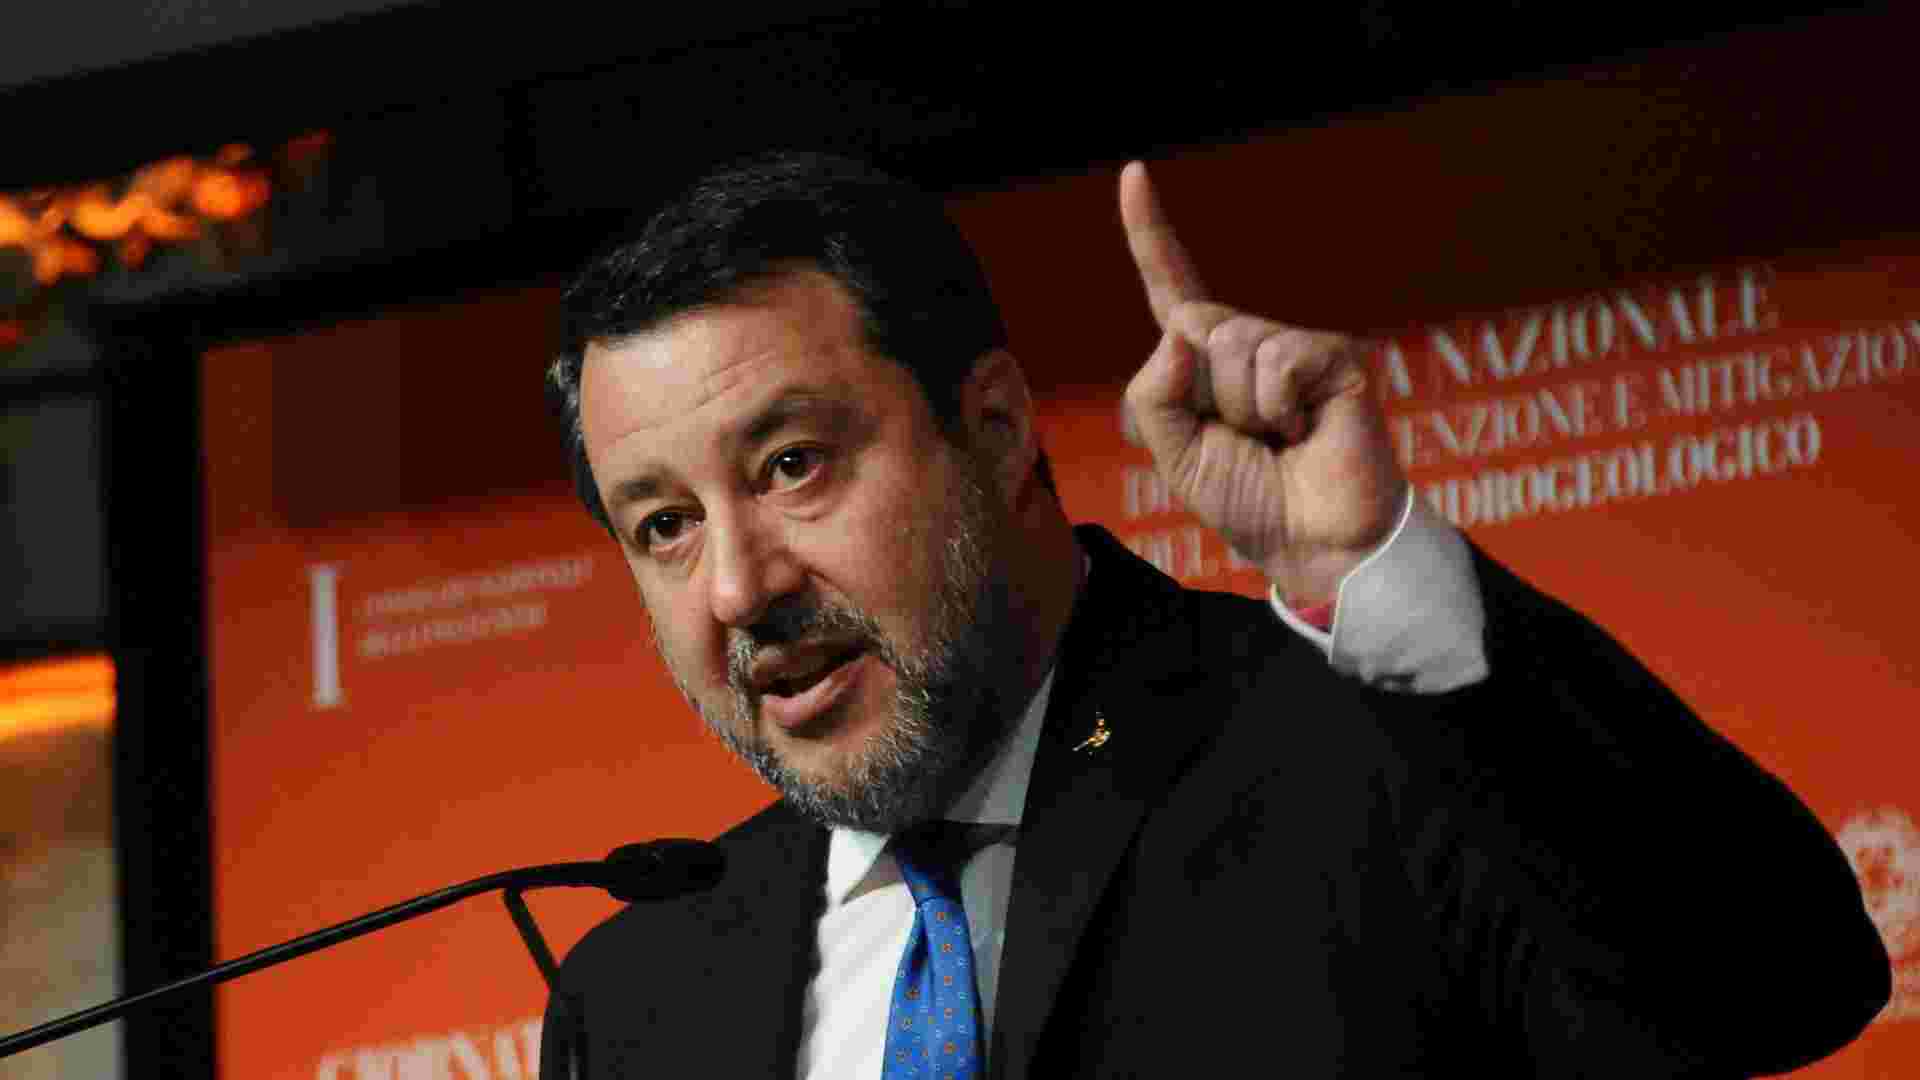 Toti ai domiciliari, Salvini spinge per chiudere le indagini rapidamente